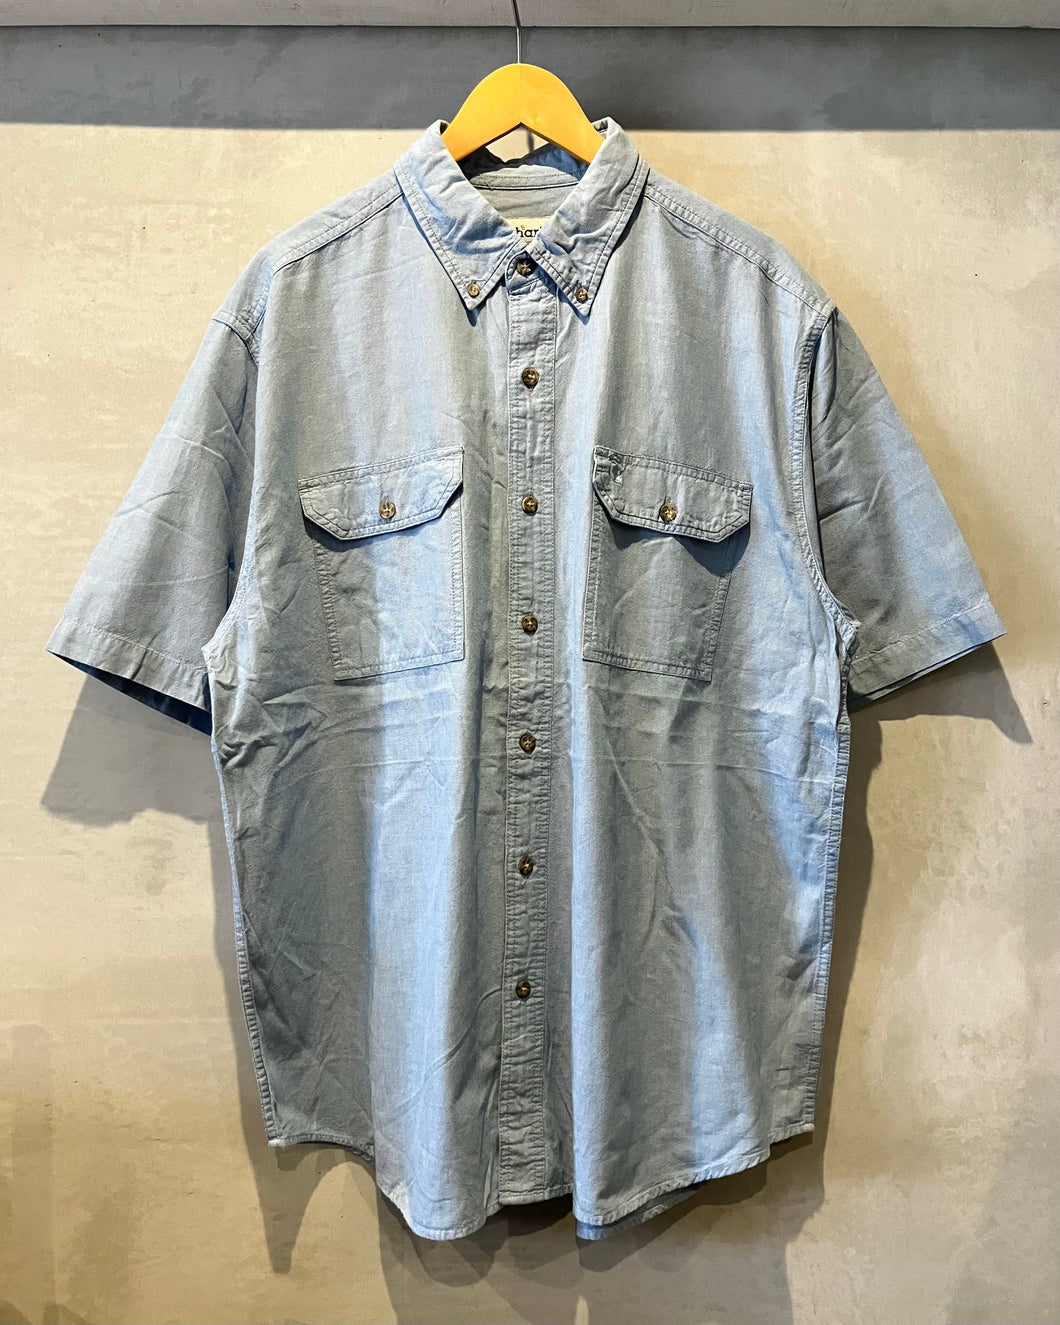 Carhartt-S/S shirt-(size XL)